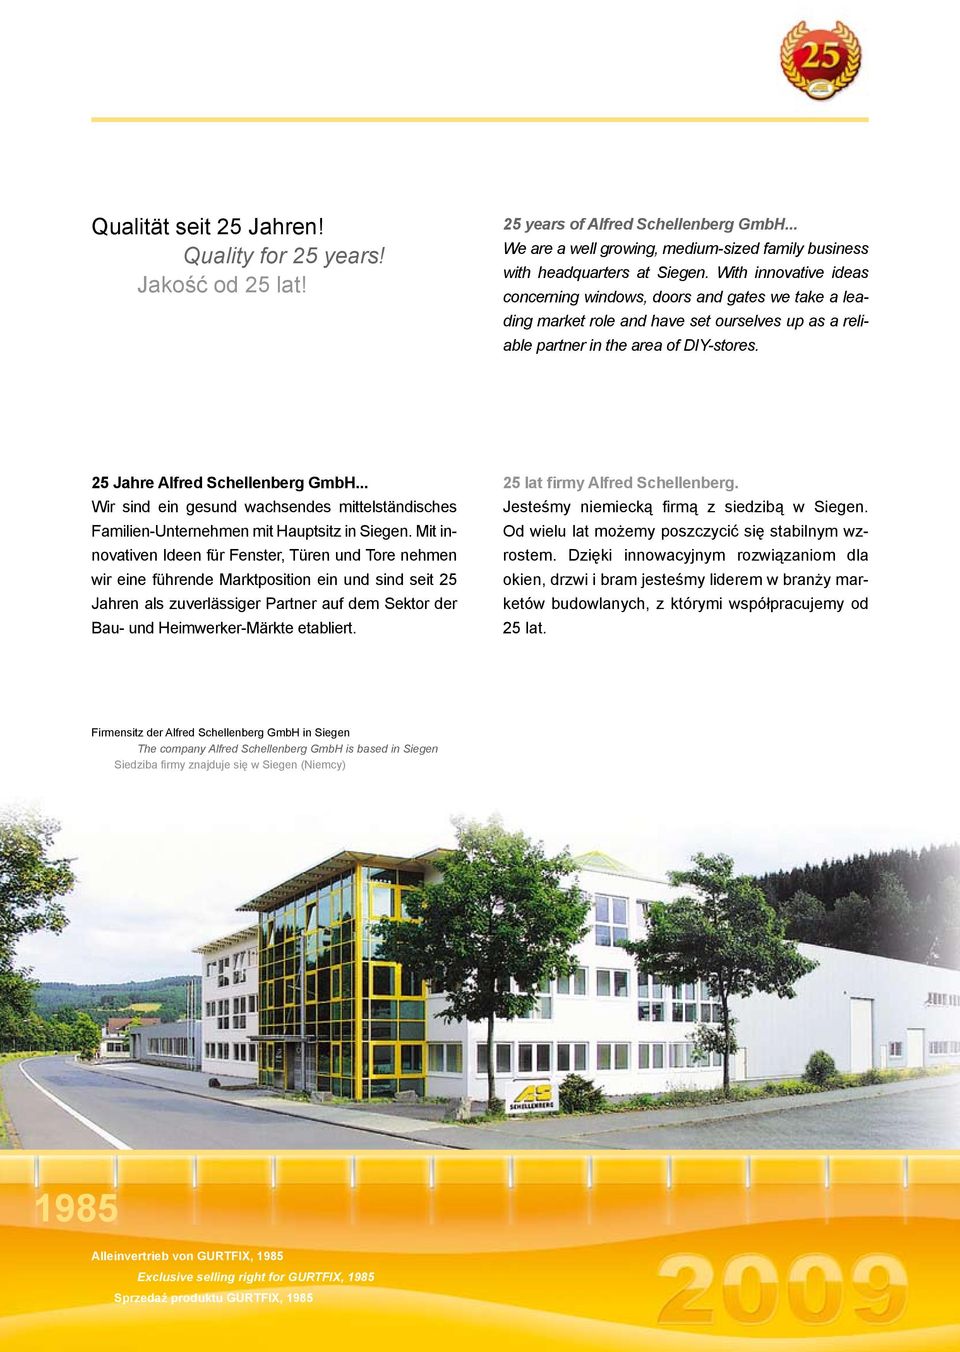 .. Wir sind ein gesund wachsendes mittelständisches Familien-Unternehmen mit Hauptsitz in Siegen.